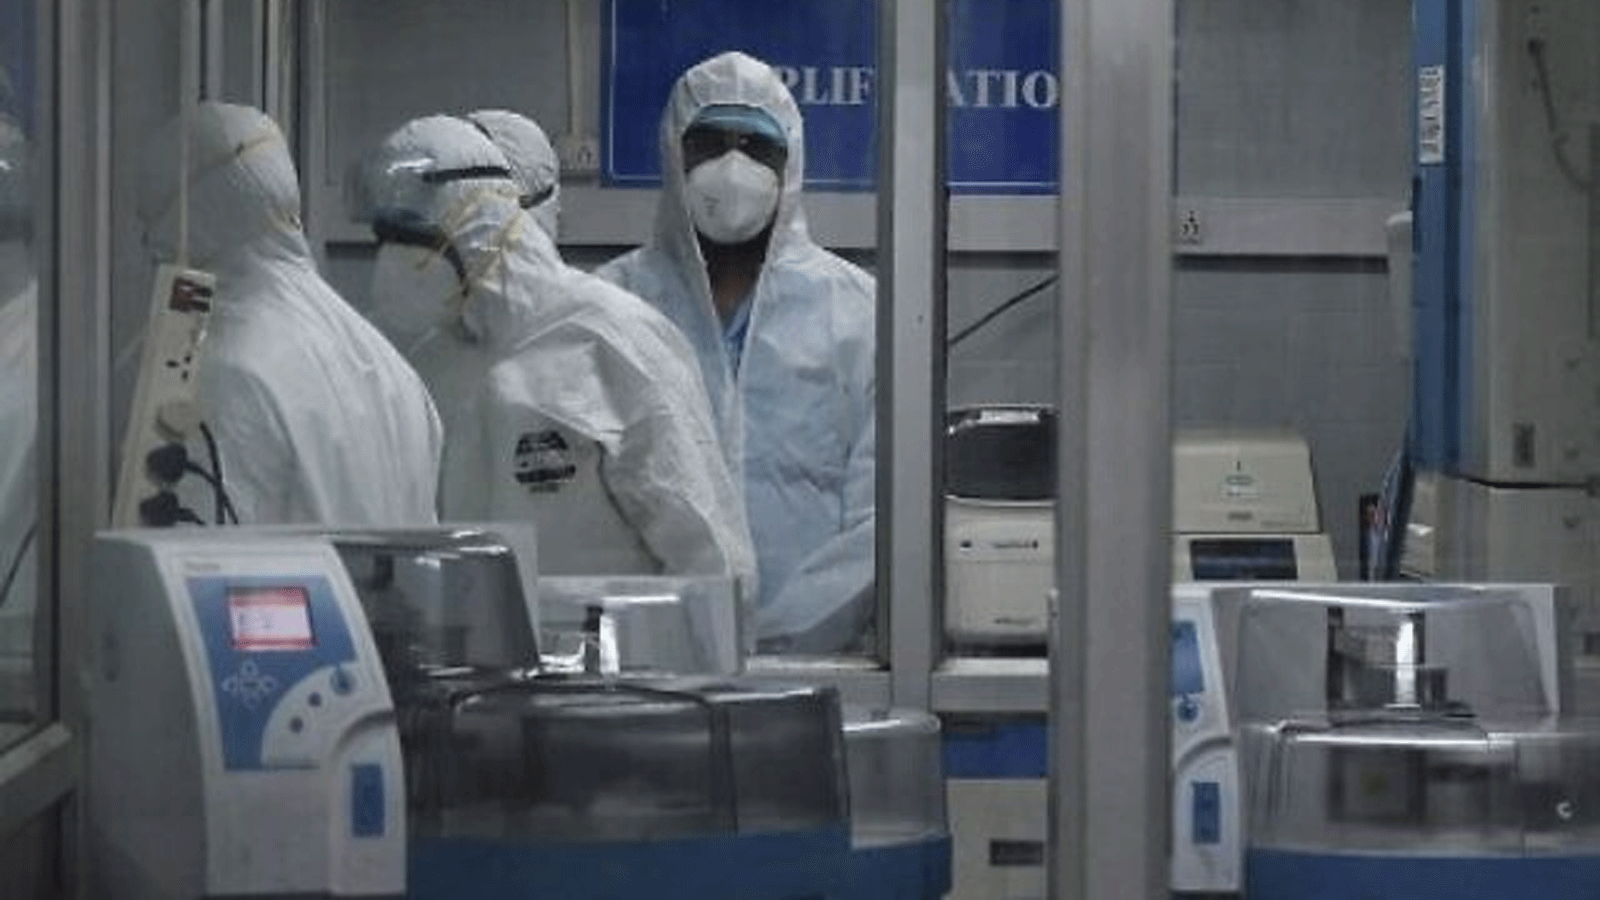 اختصاصيون يرتدون بدلات معدات الحماية الشخصية (PPE) شوهدوا داخل منشأة مختبر جزيئي تم إنشاؤها لاختبار جدري القرود، في معهد الملك في تشيناي. 28 تموز\يوليو2022.